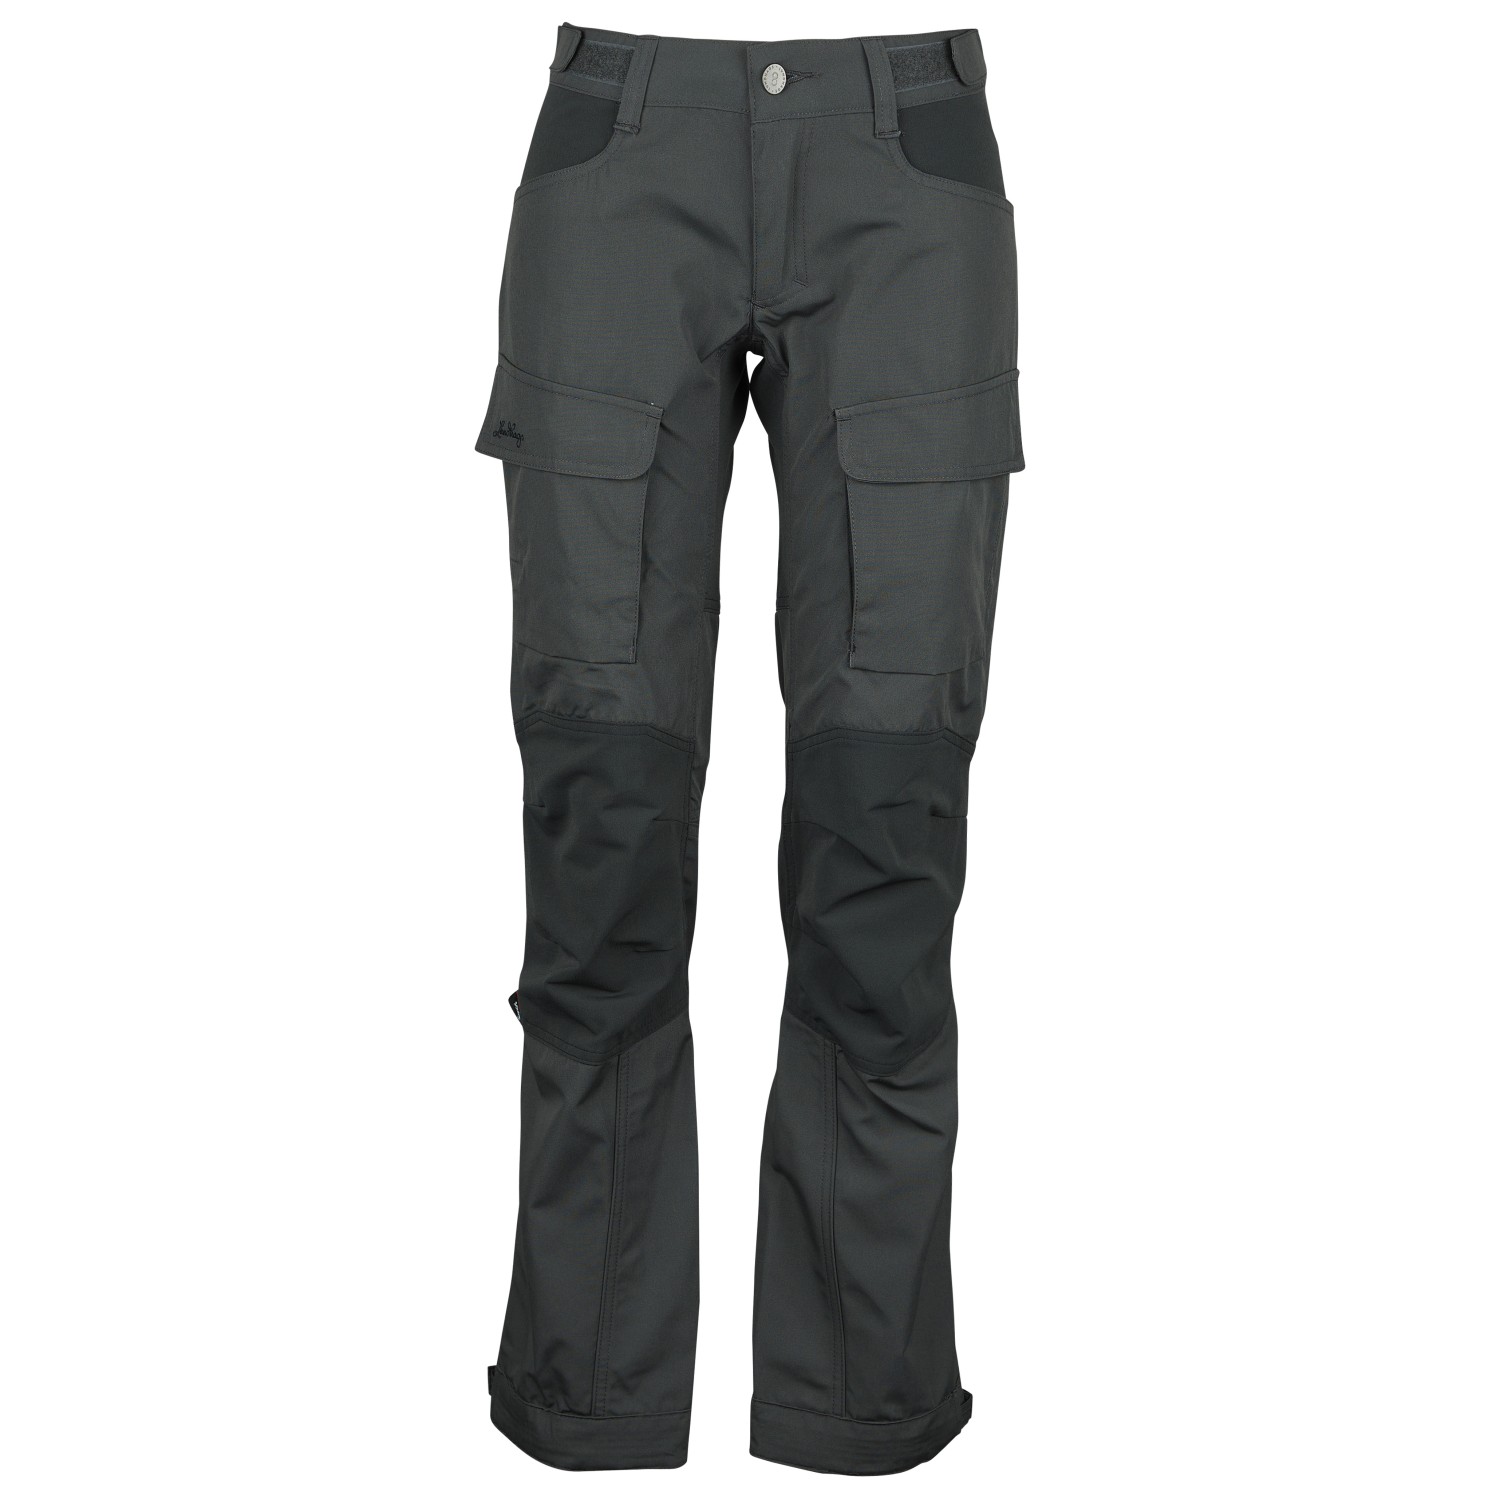 Трекинговые брюки Lundhags Women's Authentic II Pant, цвет Granite/Charcoal